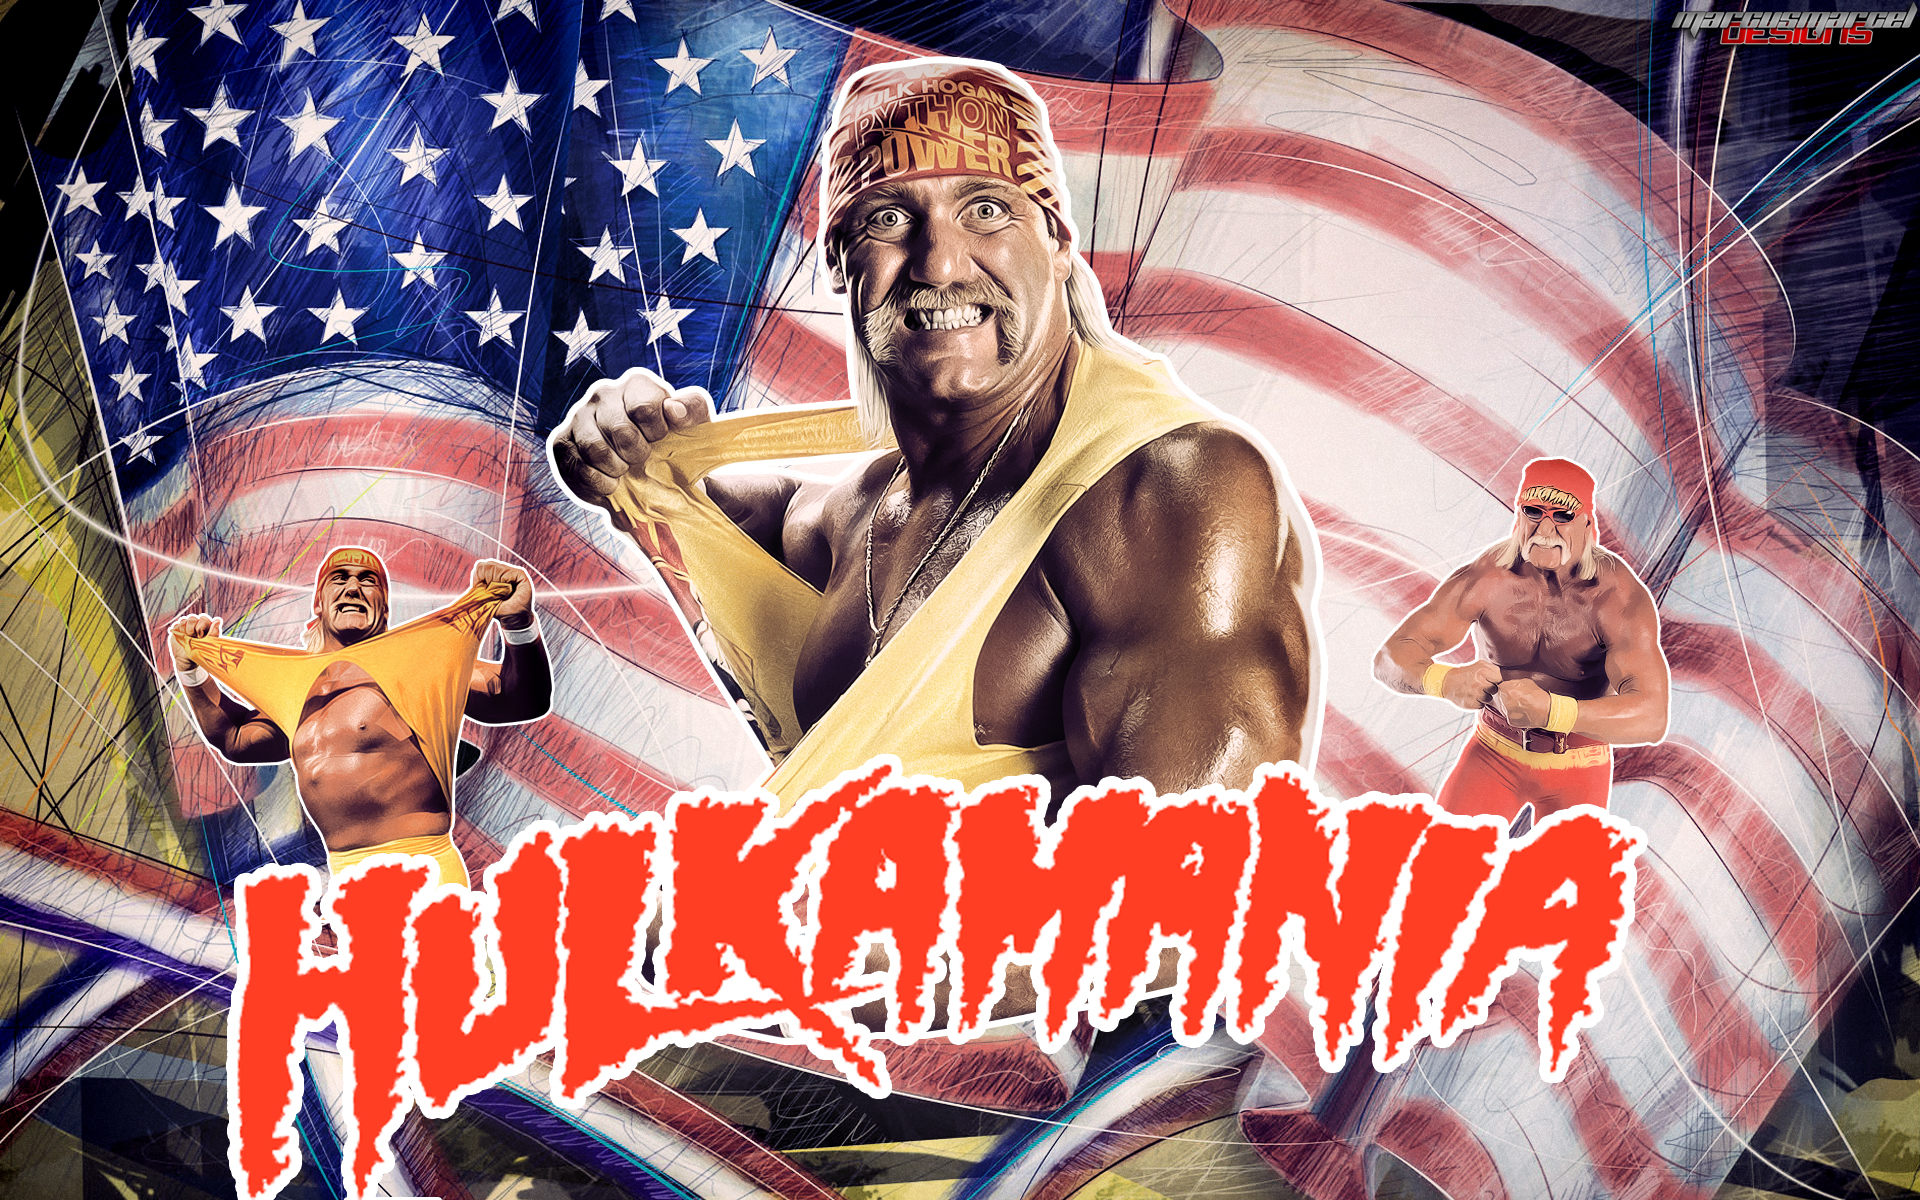 Art Wwe Hulk Hogan Hulkamania Widescreen Wallpaper